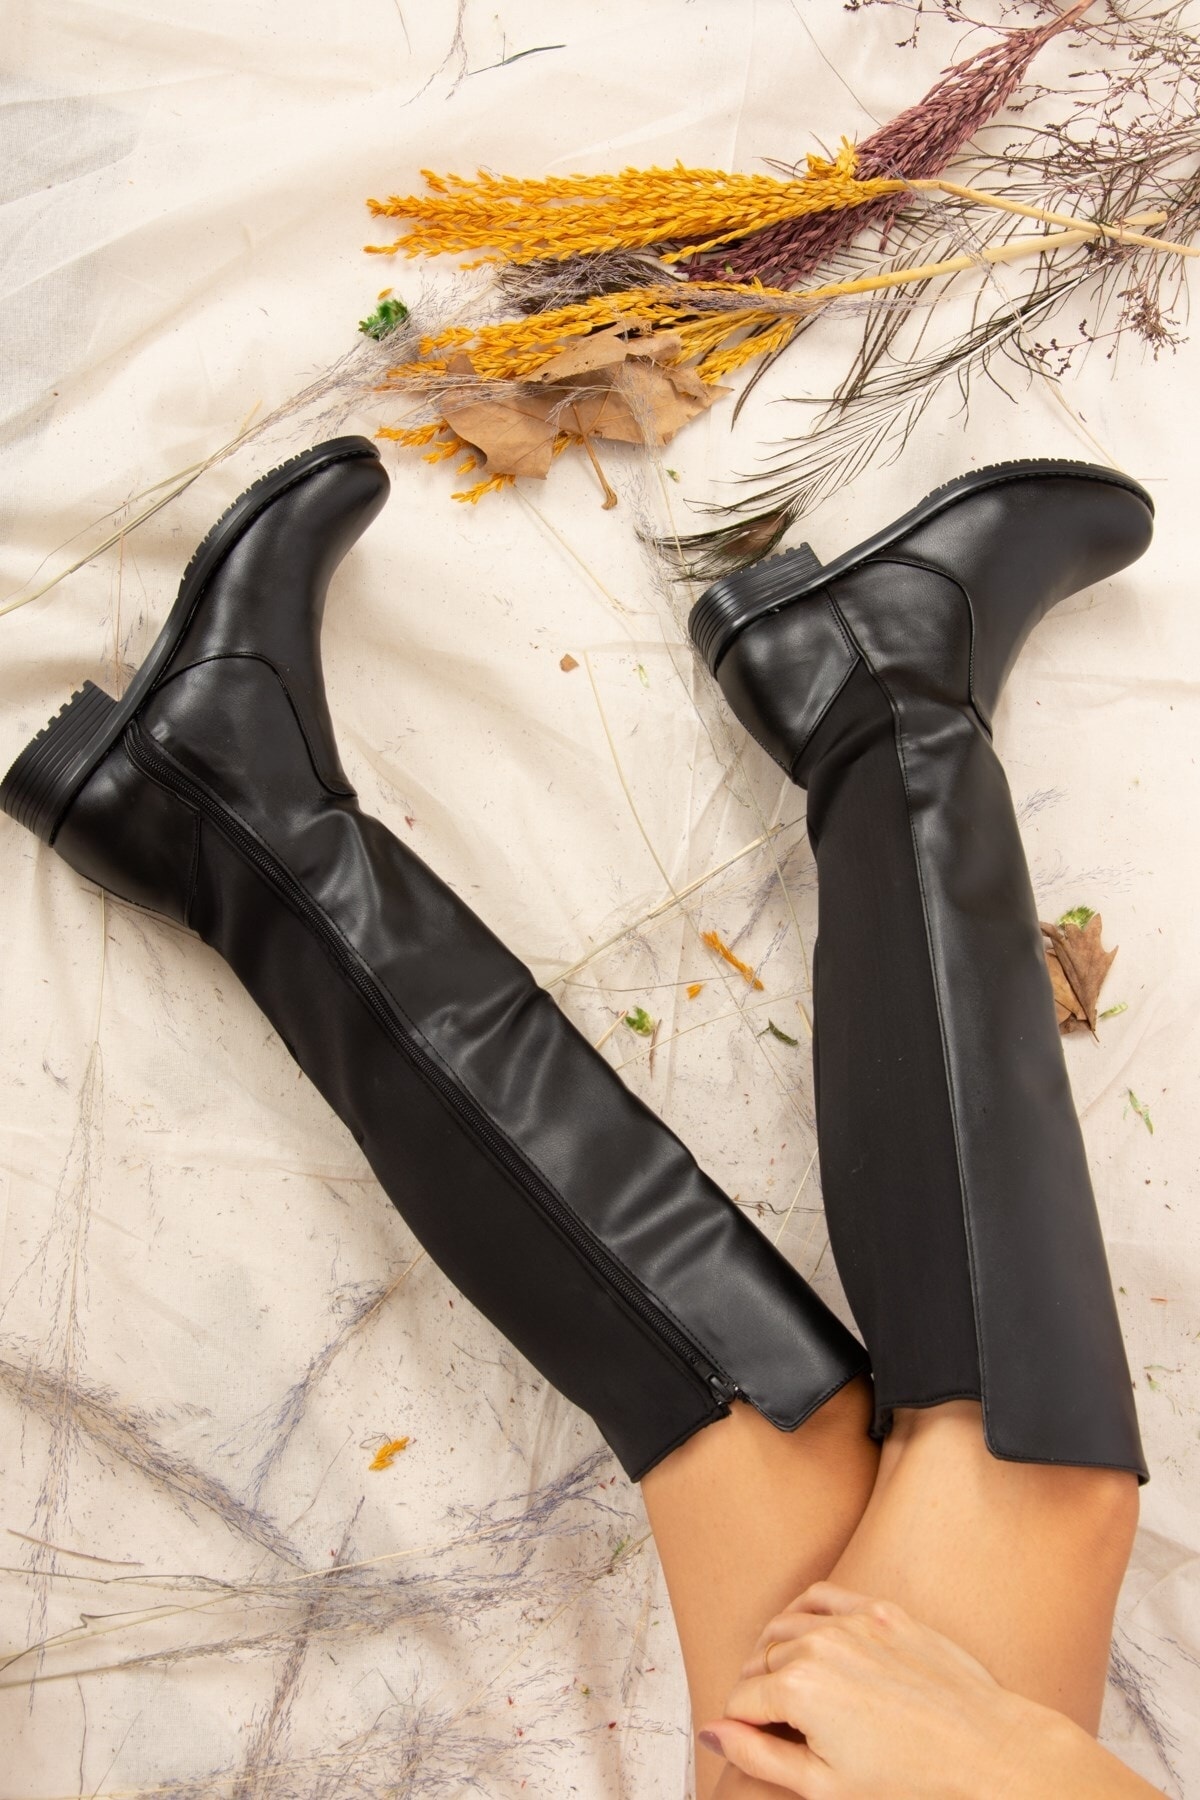 Fox Shoes Black Faux Leather Women's Boots